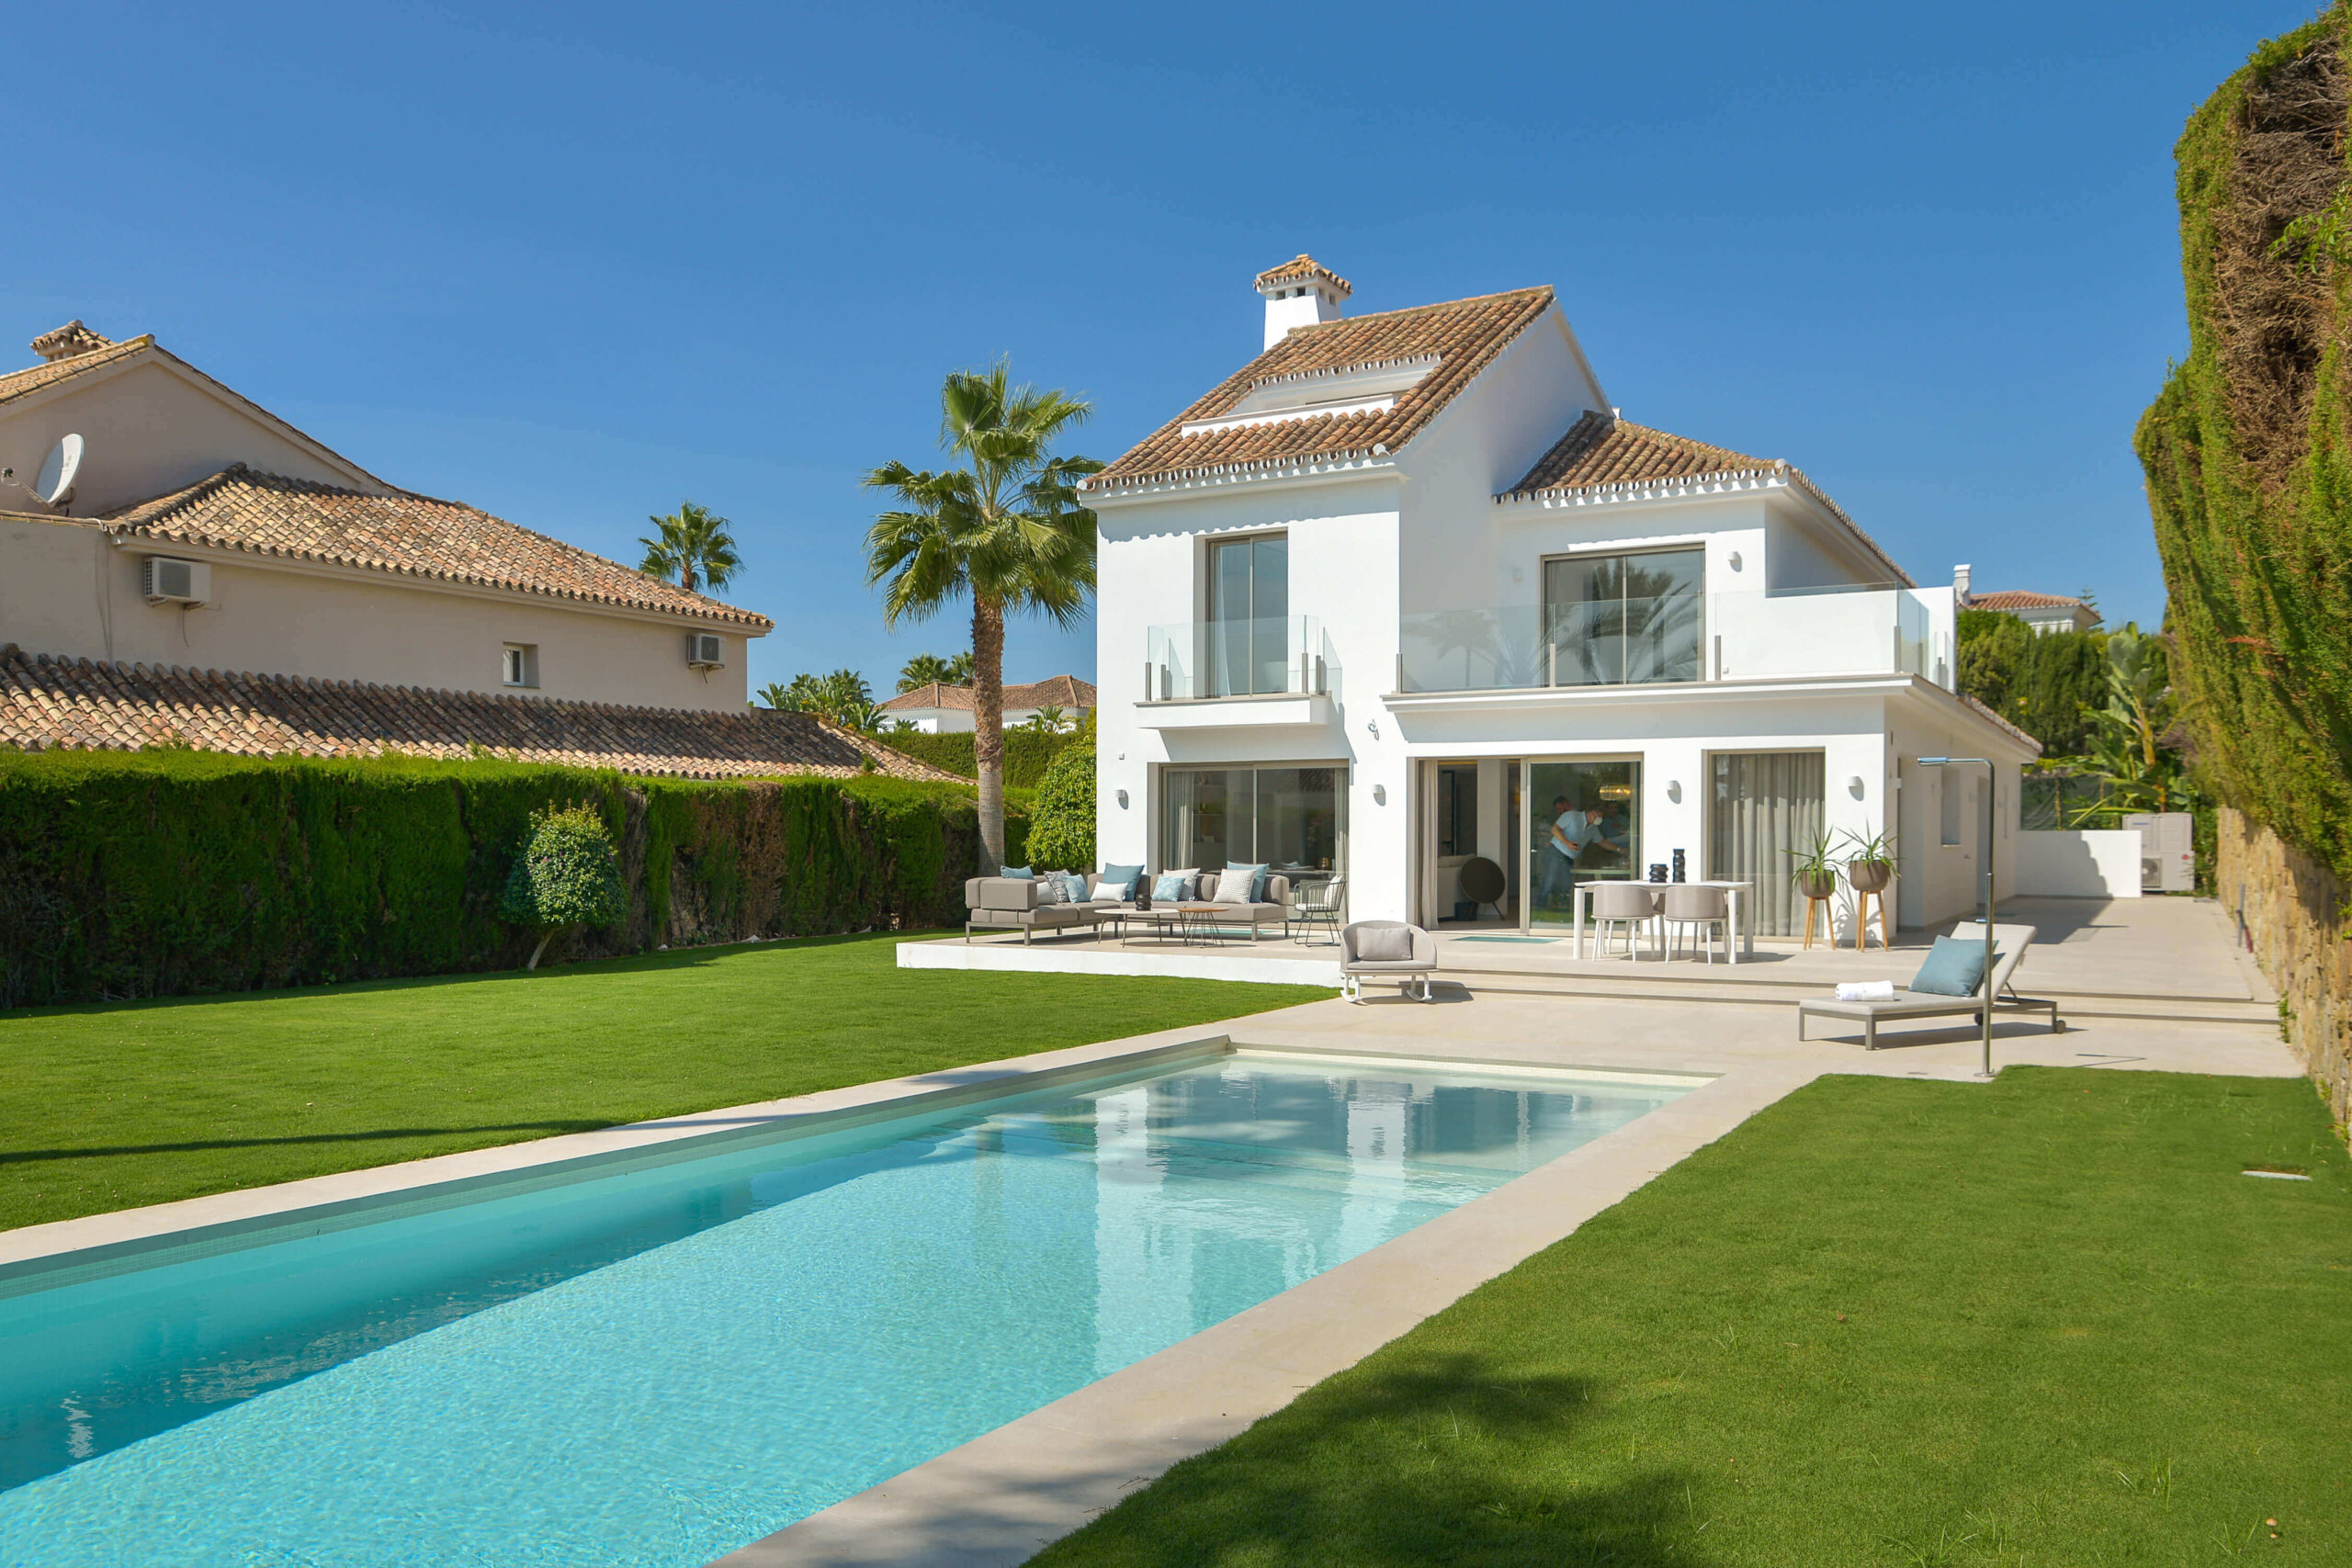 Mediterranean_luxury_villa